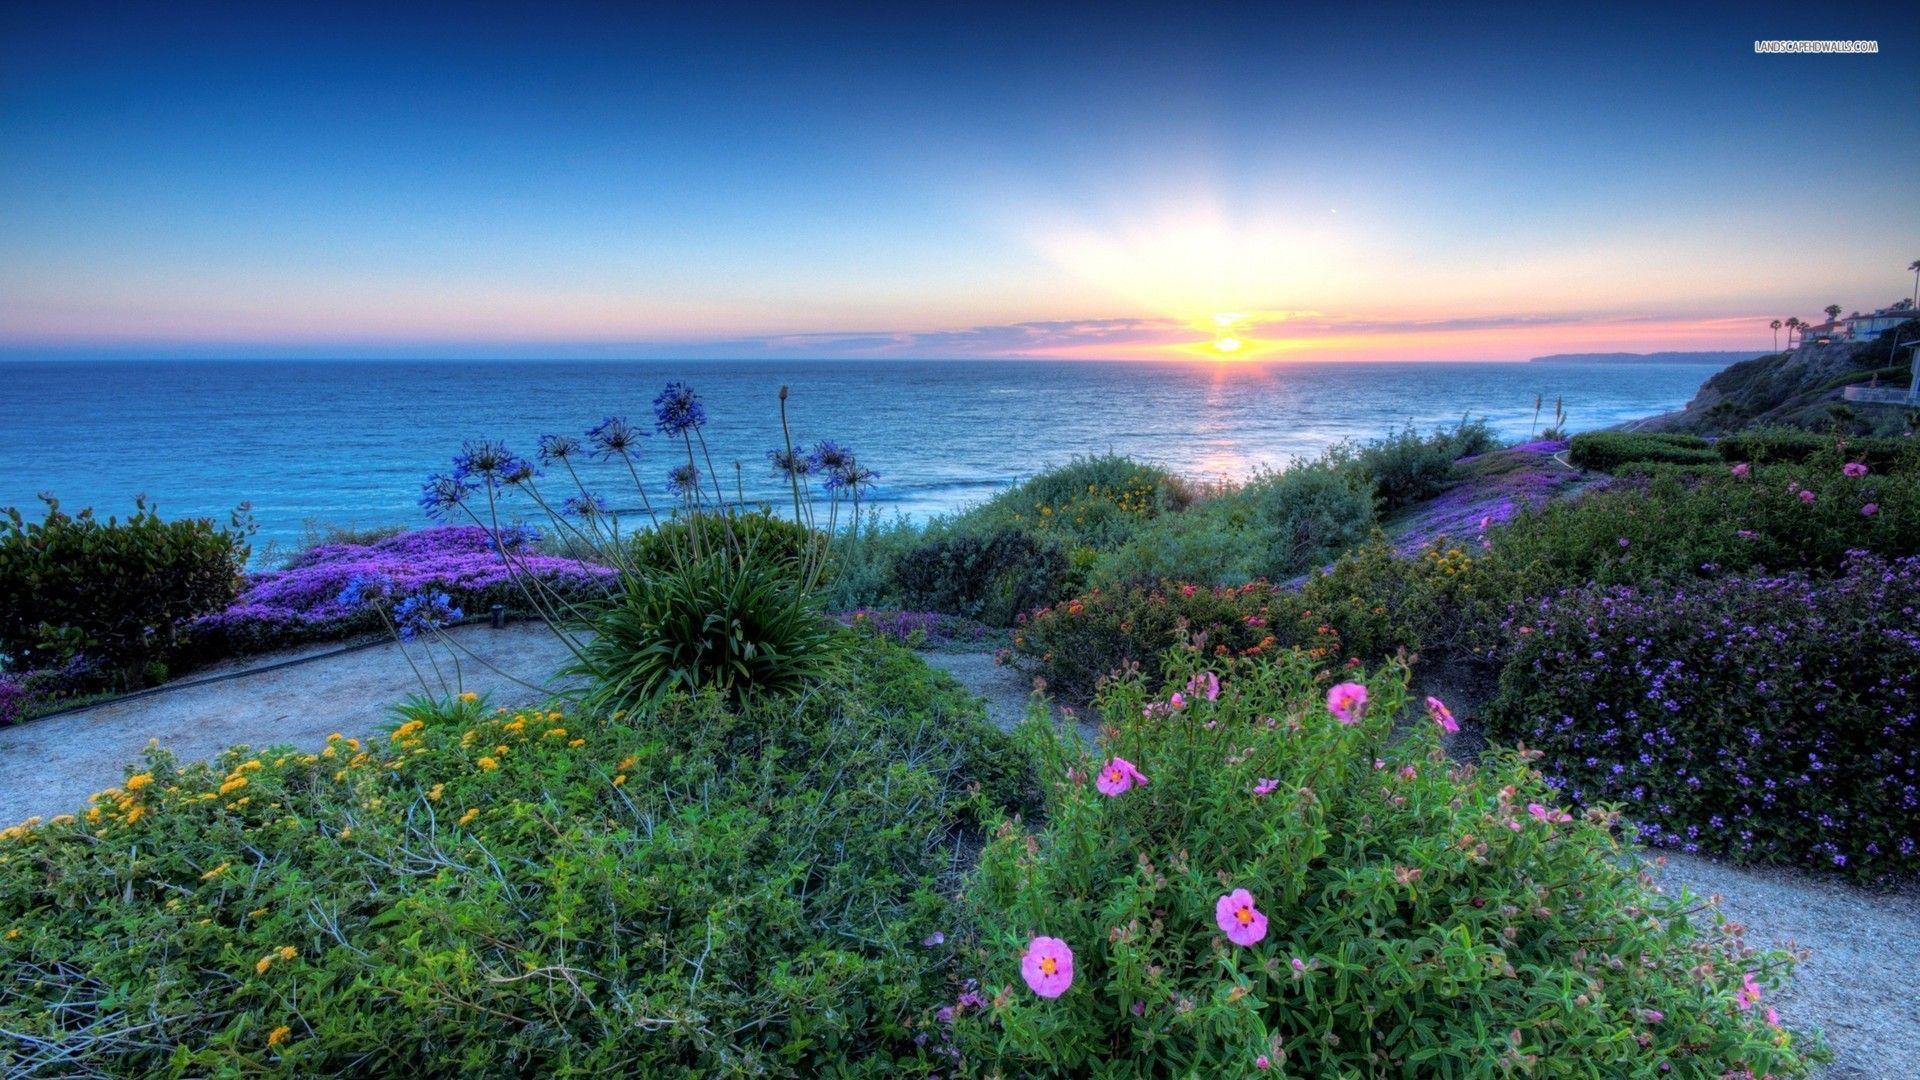 1920x1080 Bãi biển Hoa.  Hình nền hoa trên bãi biển lúc mặt trời mọc.  đại dương